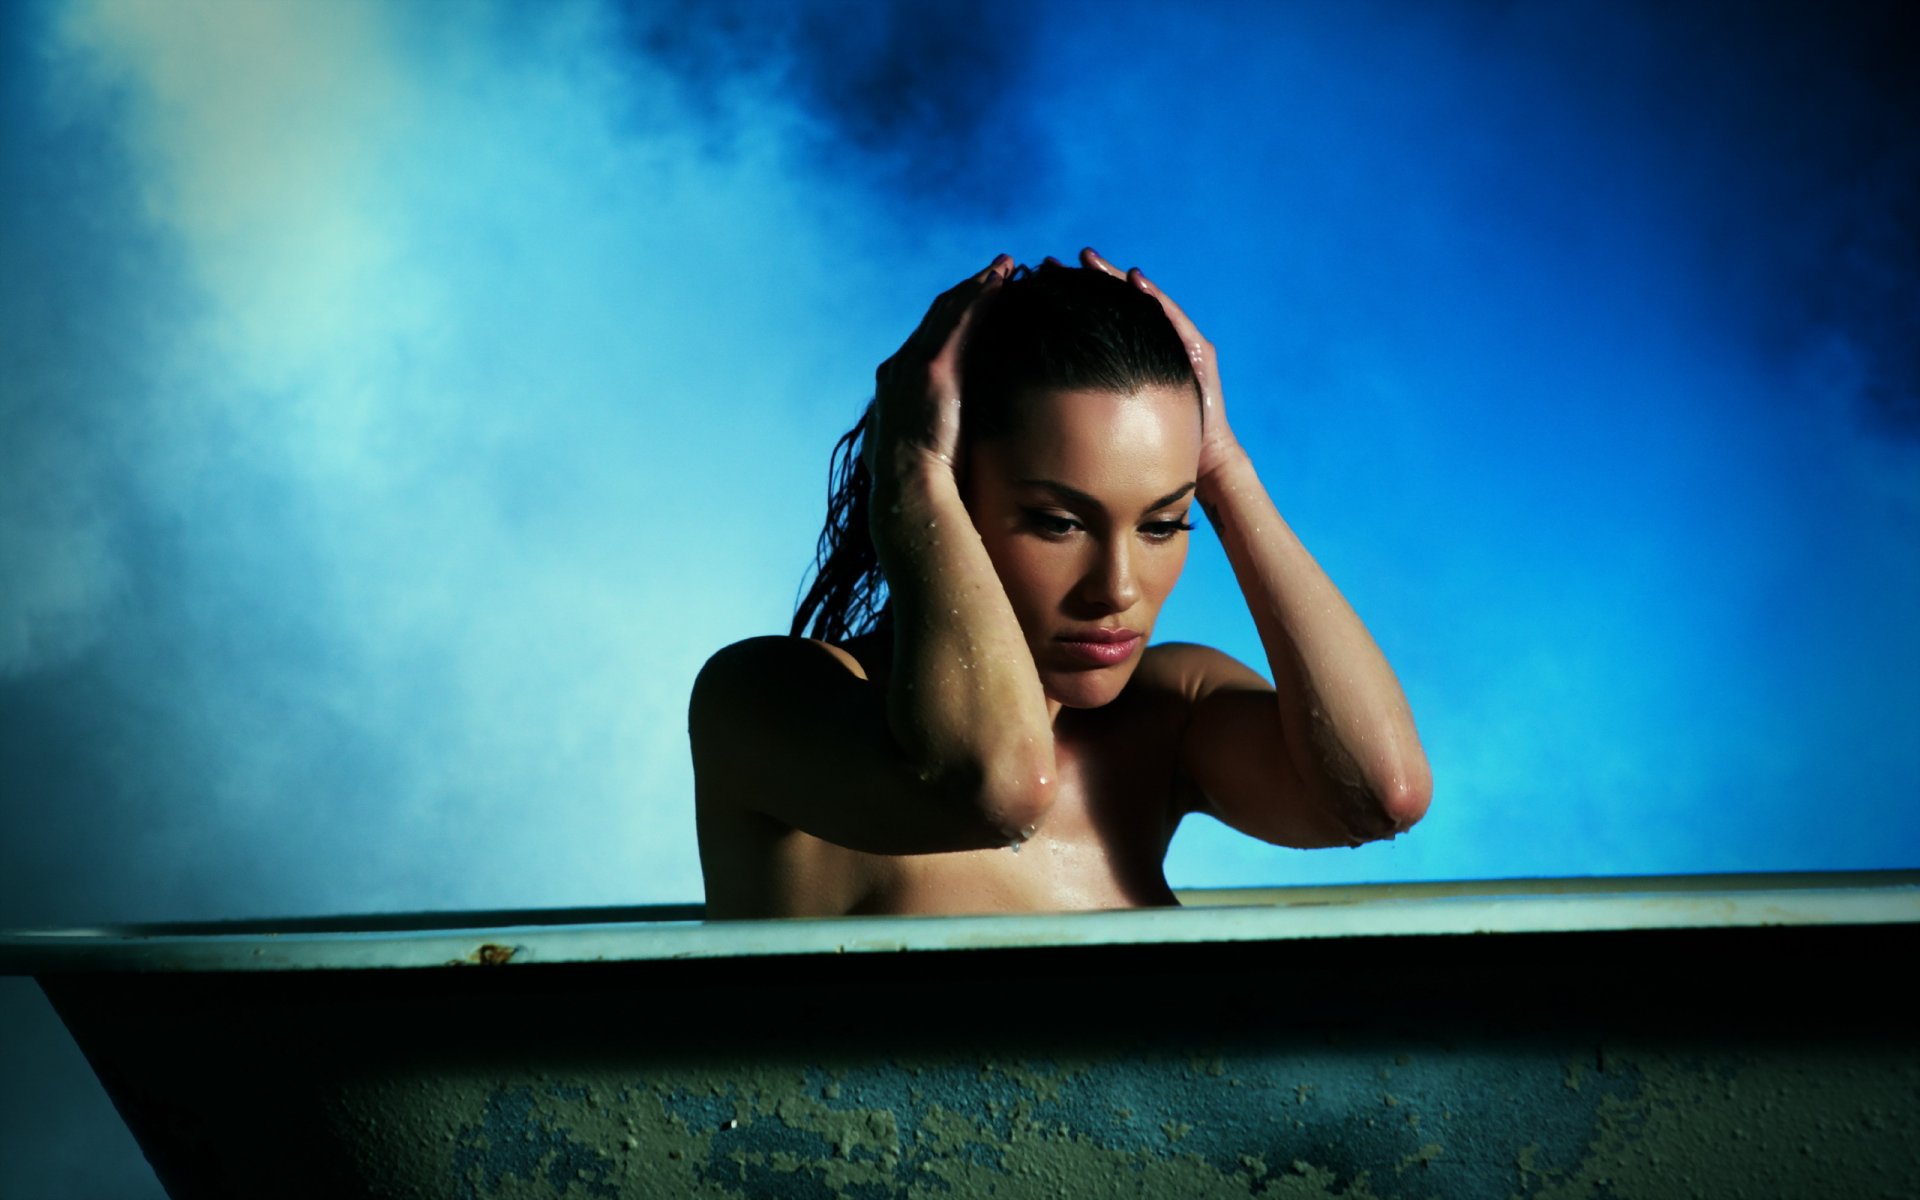 Молодая модель позирует в ванной